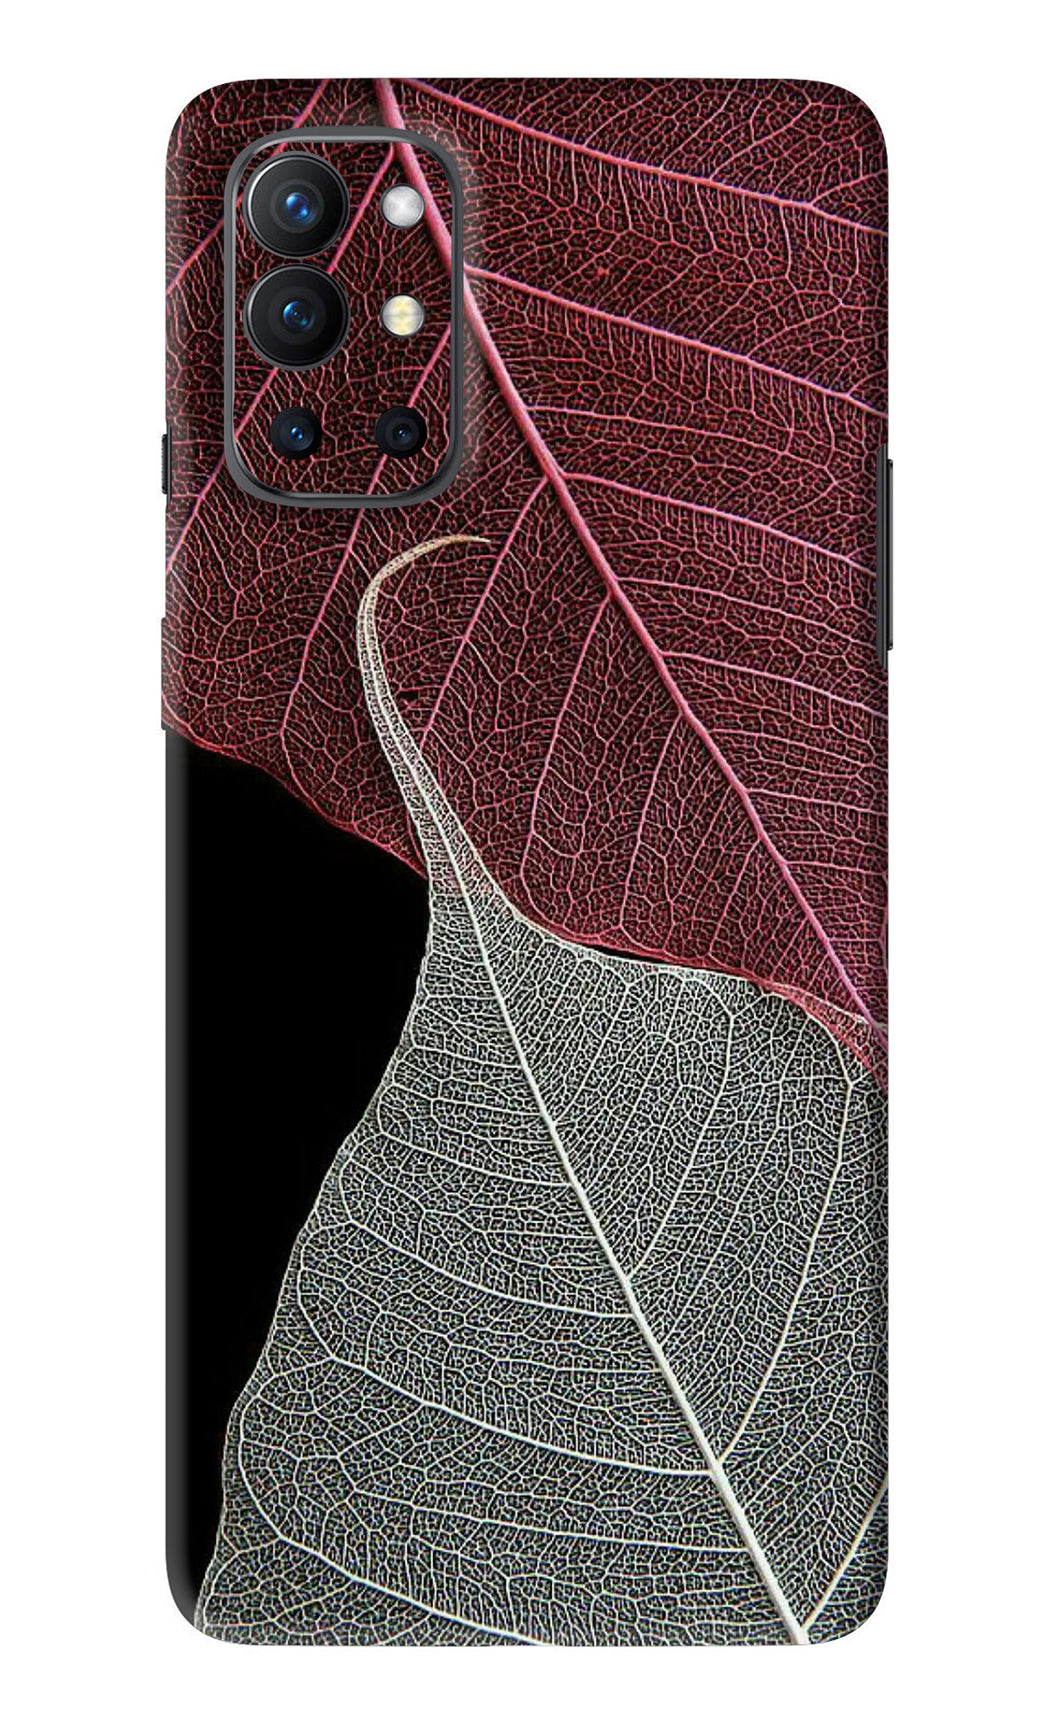 Leaf Pattern OnePlus 9R Back Skin Wrap